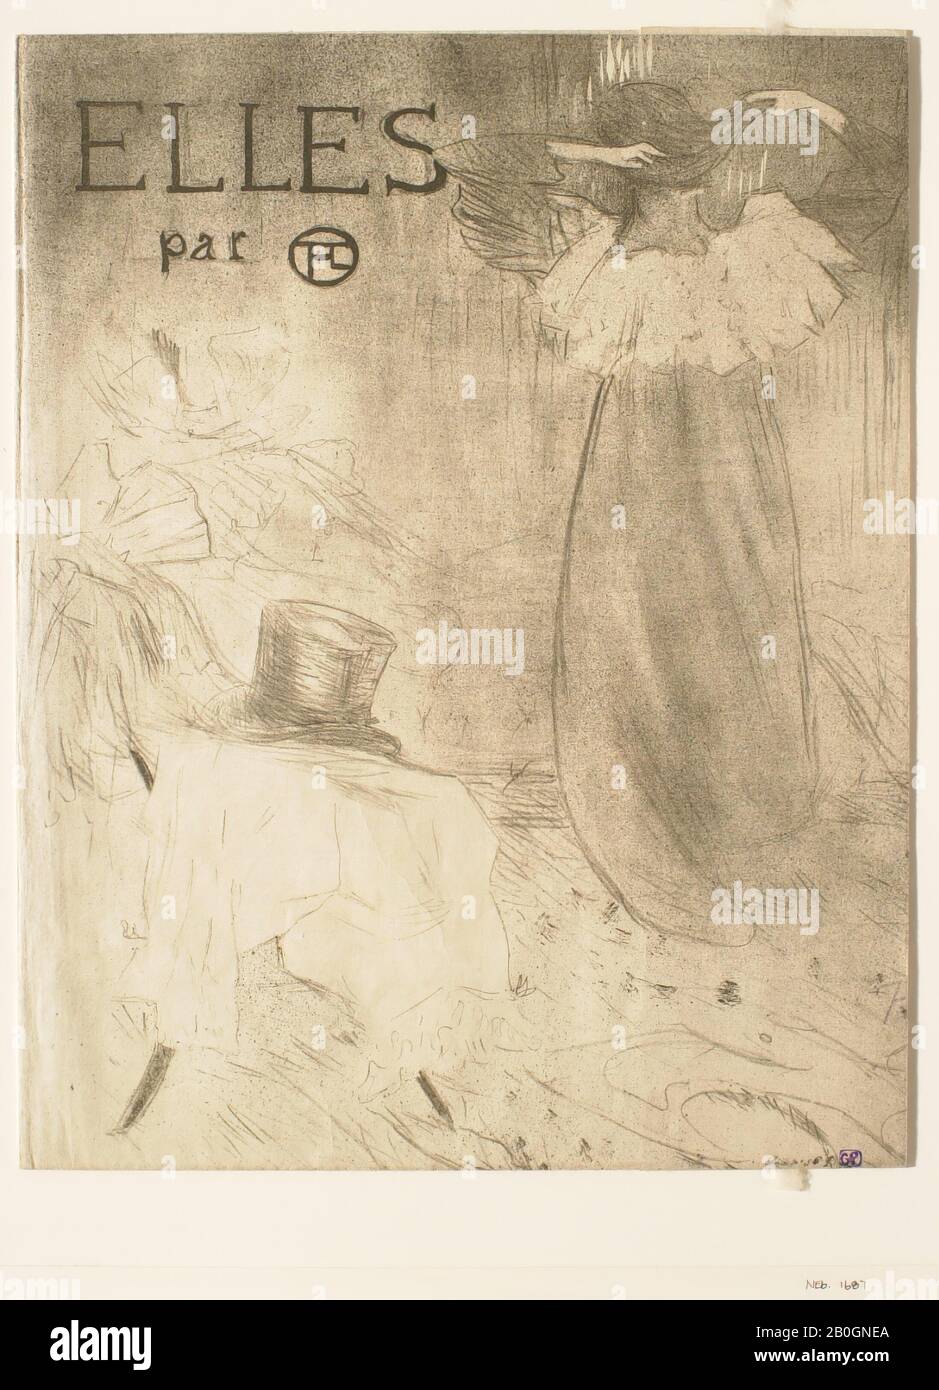 Henri de Toulouse-Lautrec, francés, 1864–1901, Portada del Portafolio “Elles”, 1896, Litografía sobre papel, imagen: 22 7/16 x 22 1/4 pulg. (57 x 56.5 cm Foto de stock